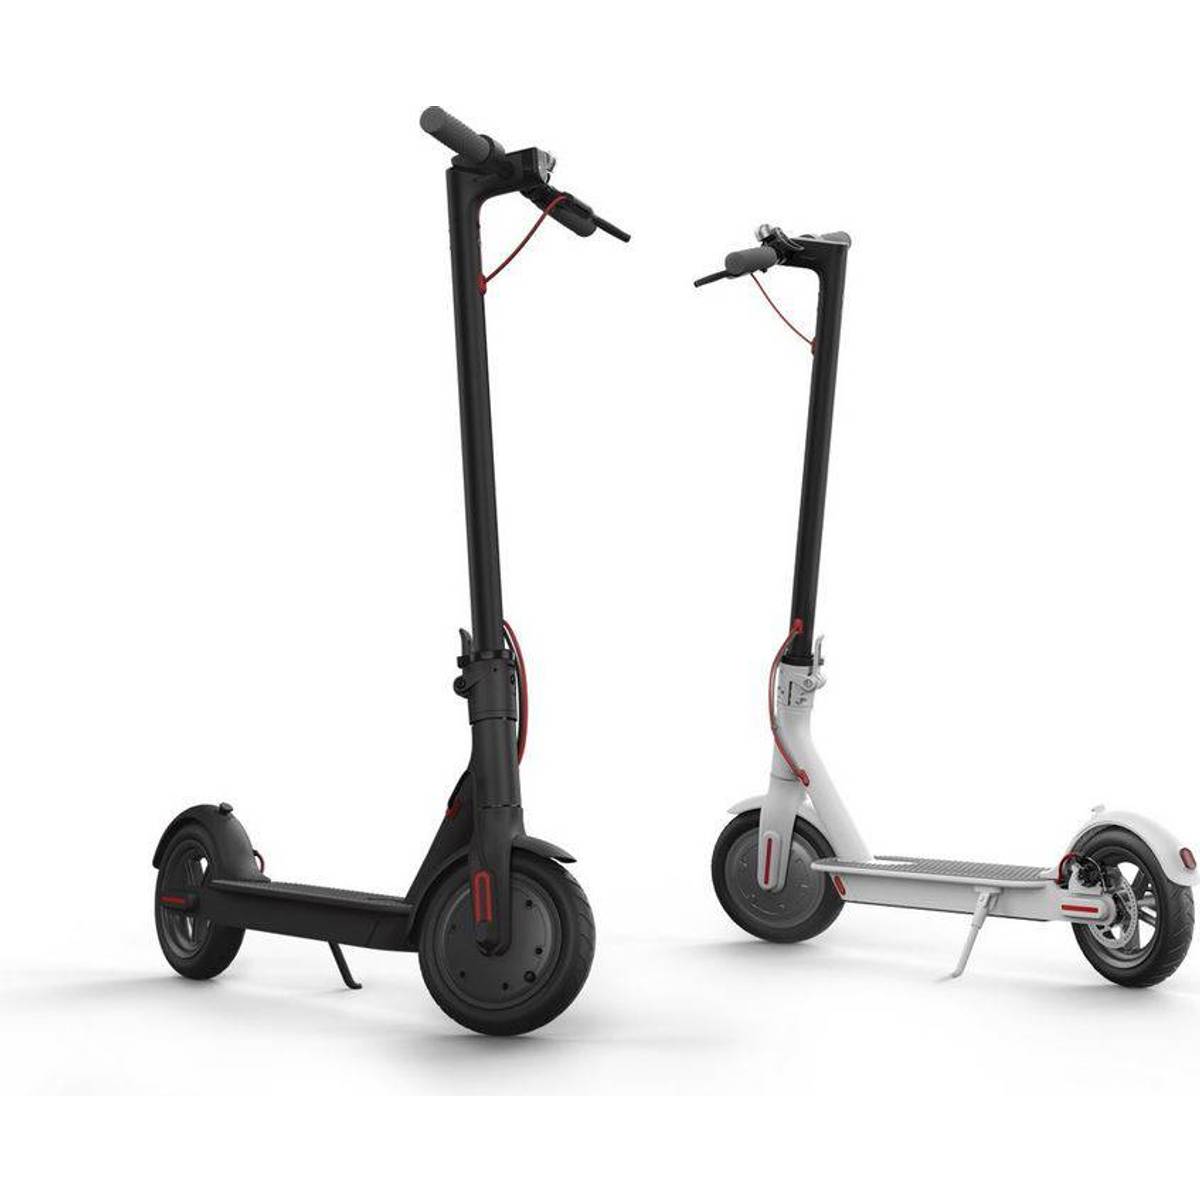 Elscooter - Sort (99 produkter) hos PriceRunner • Se priser nu »